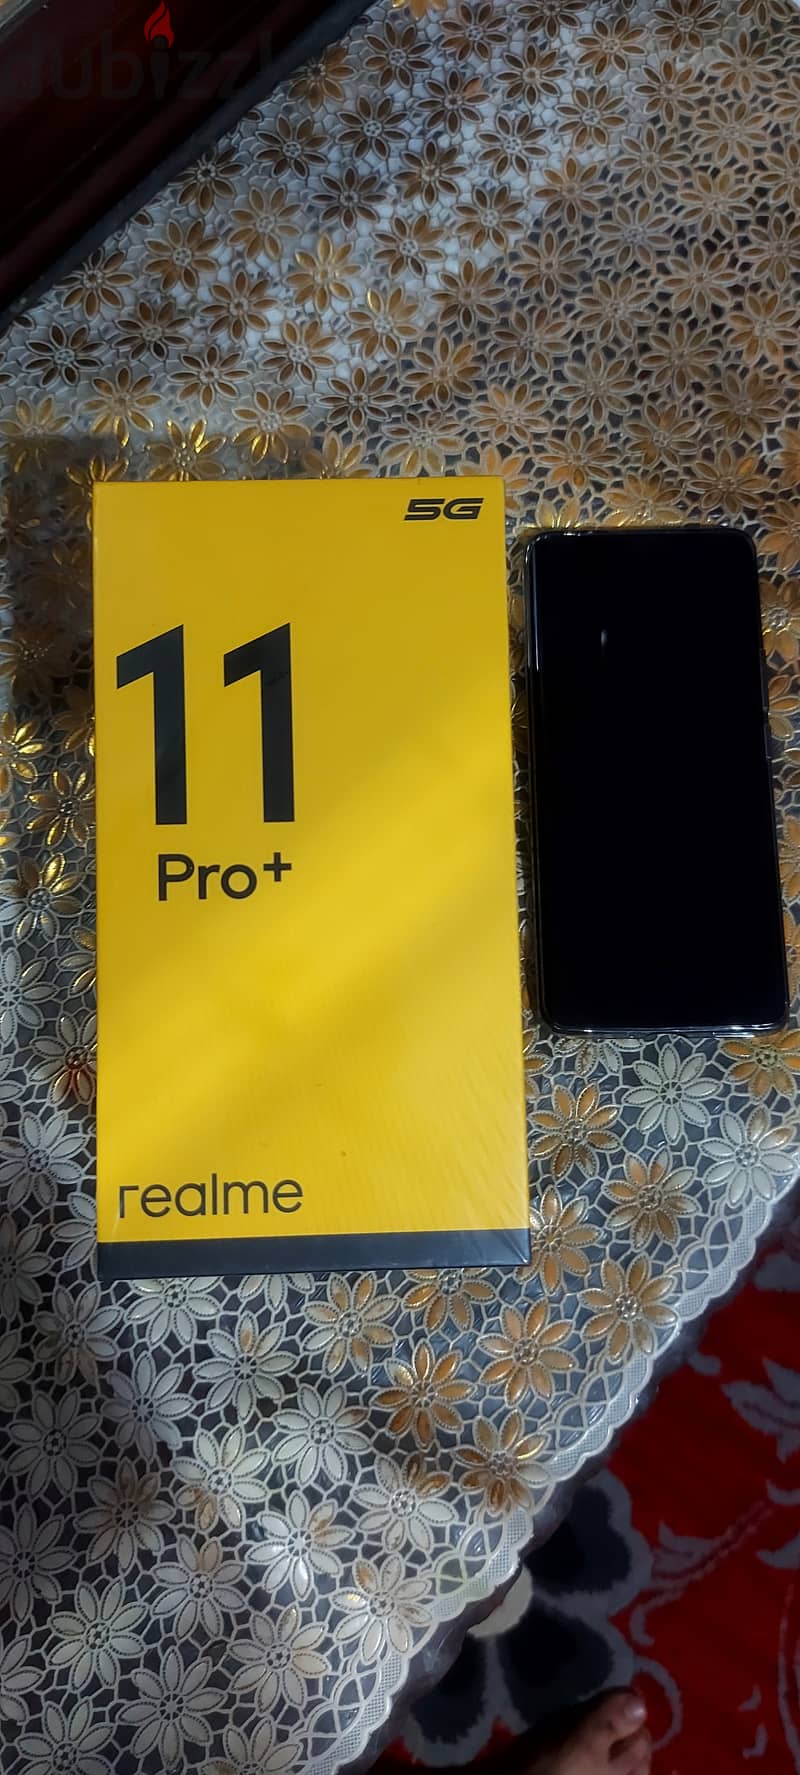 Brand: realme

Realme 11 Pro+ Dual-SIM 512GB ROM + 12GB RAM 5G 2